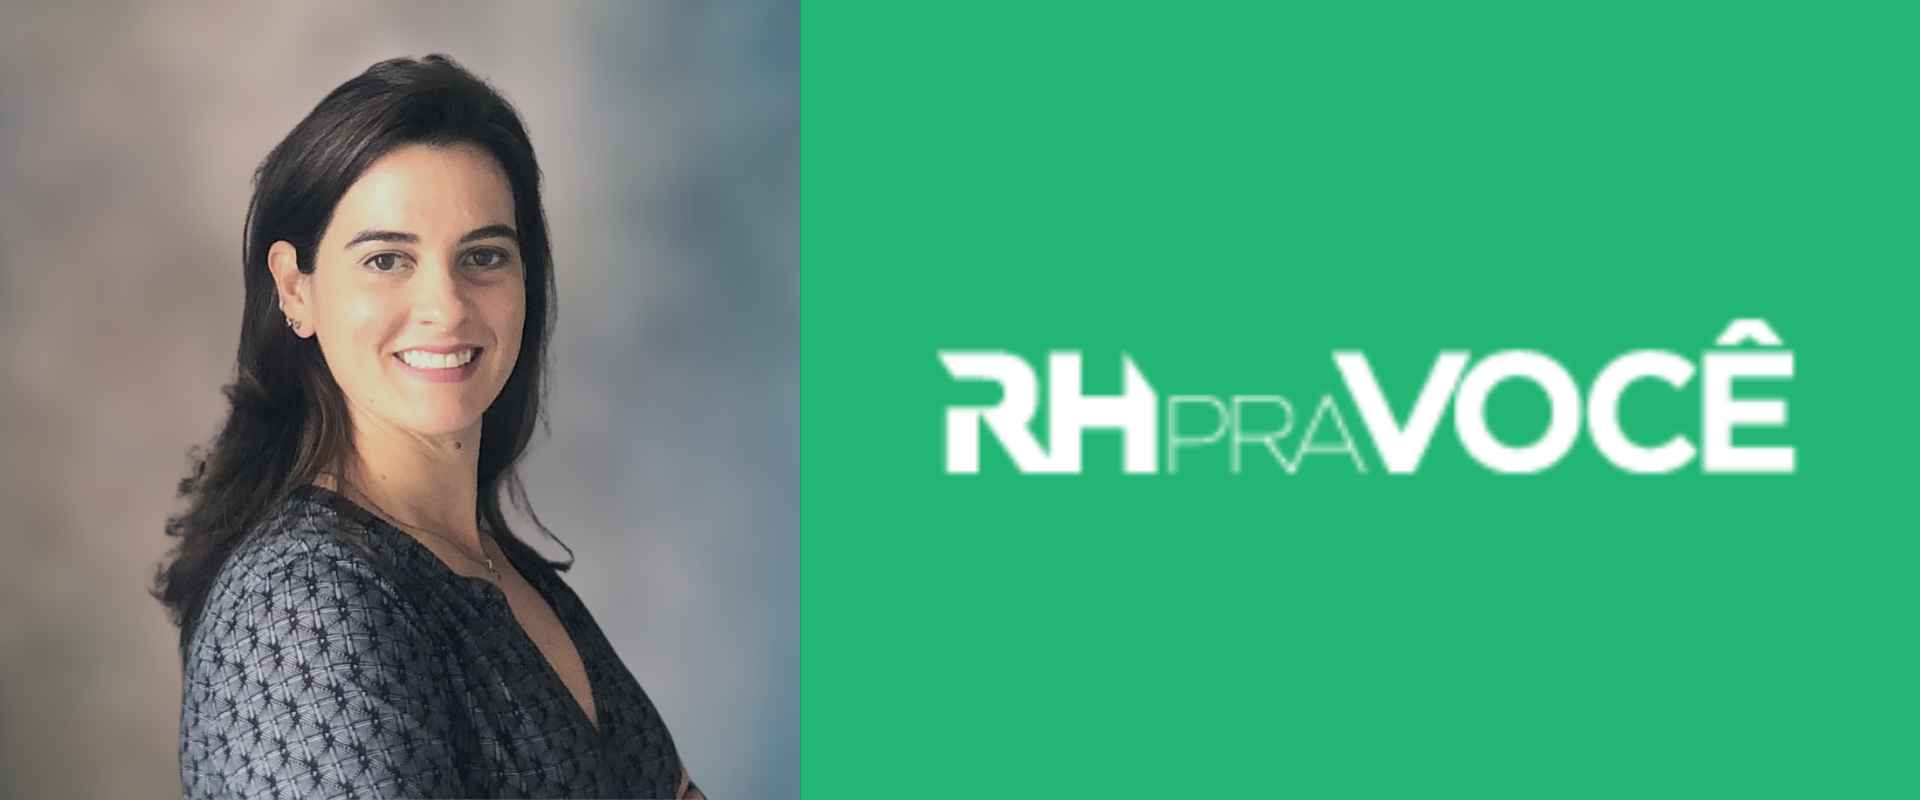 Em contribuição ao RH Pra Você, a Profª Liliane Furtado comenta sobre a importância da pratica da liderança inclusiva. 